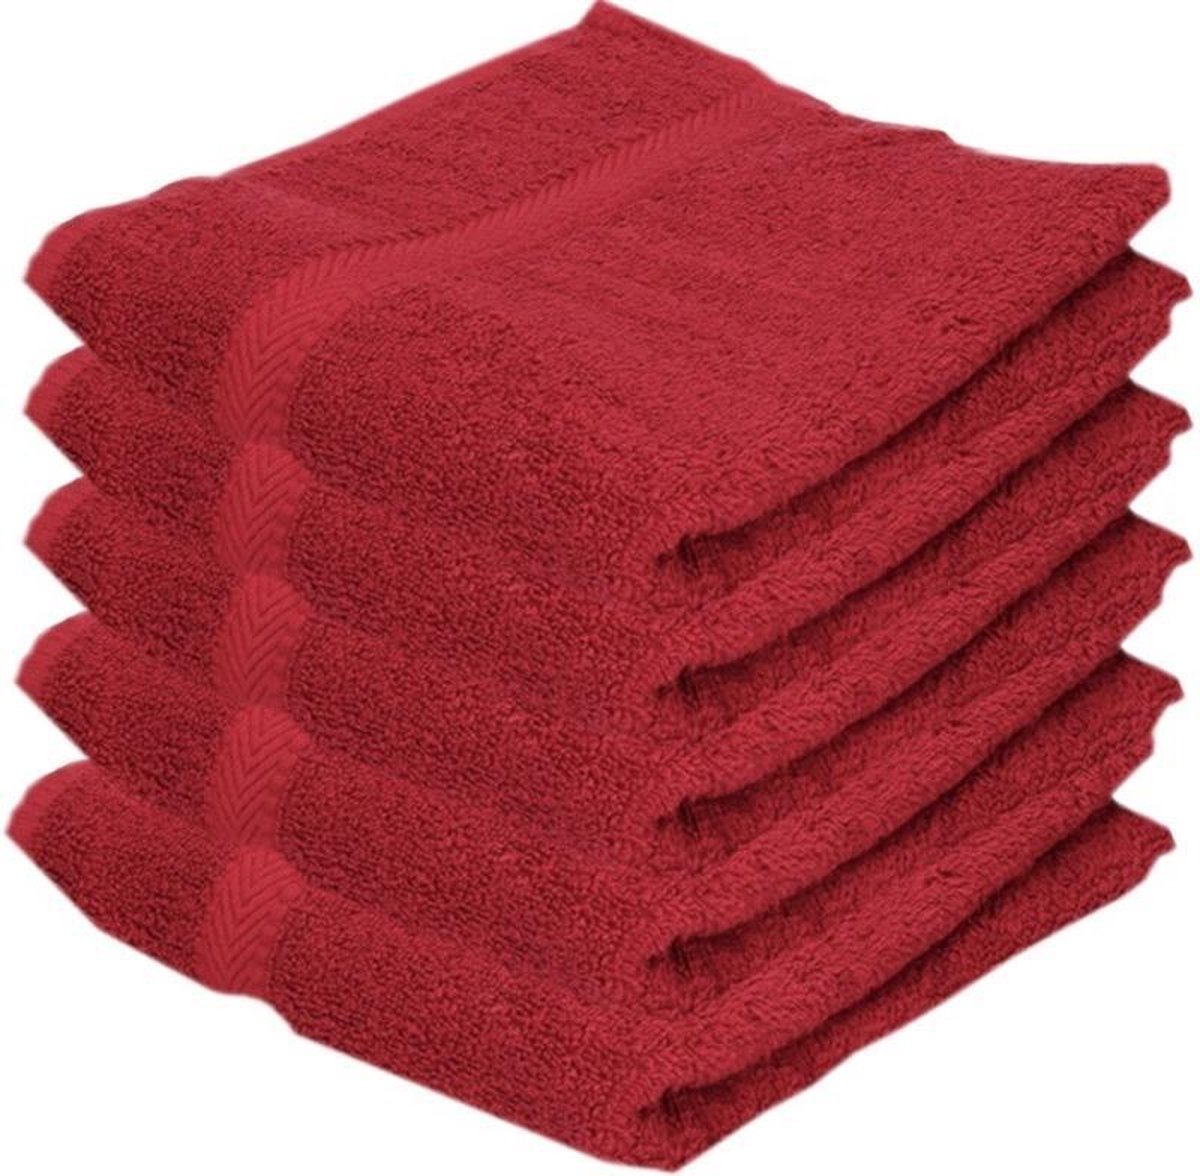 5x Voordelige handdoeken rood 50 x 100 cm 420 grams - Badkamer textiel badhanddoeken